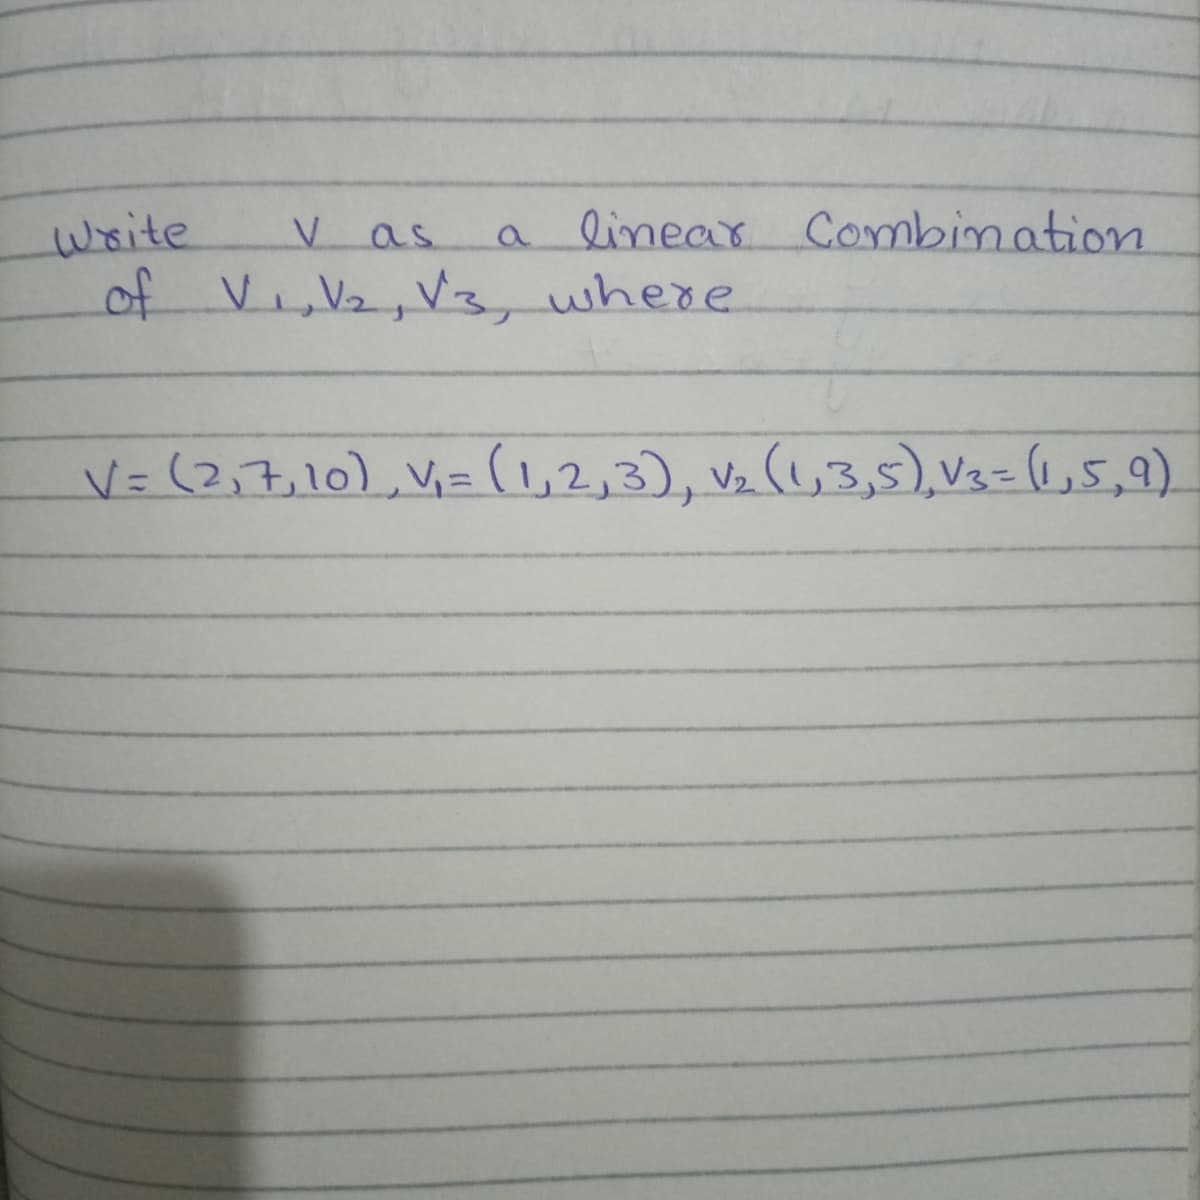 a linear Combination
write
of Vi,V2, Vz, where
as
V=(2,7,10),V=(,2,3), v½ (1,3,5), V3= 1,5,9)
